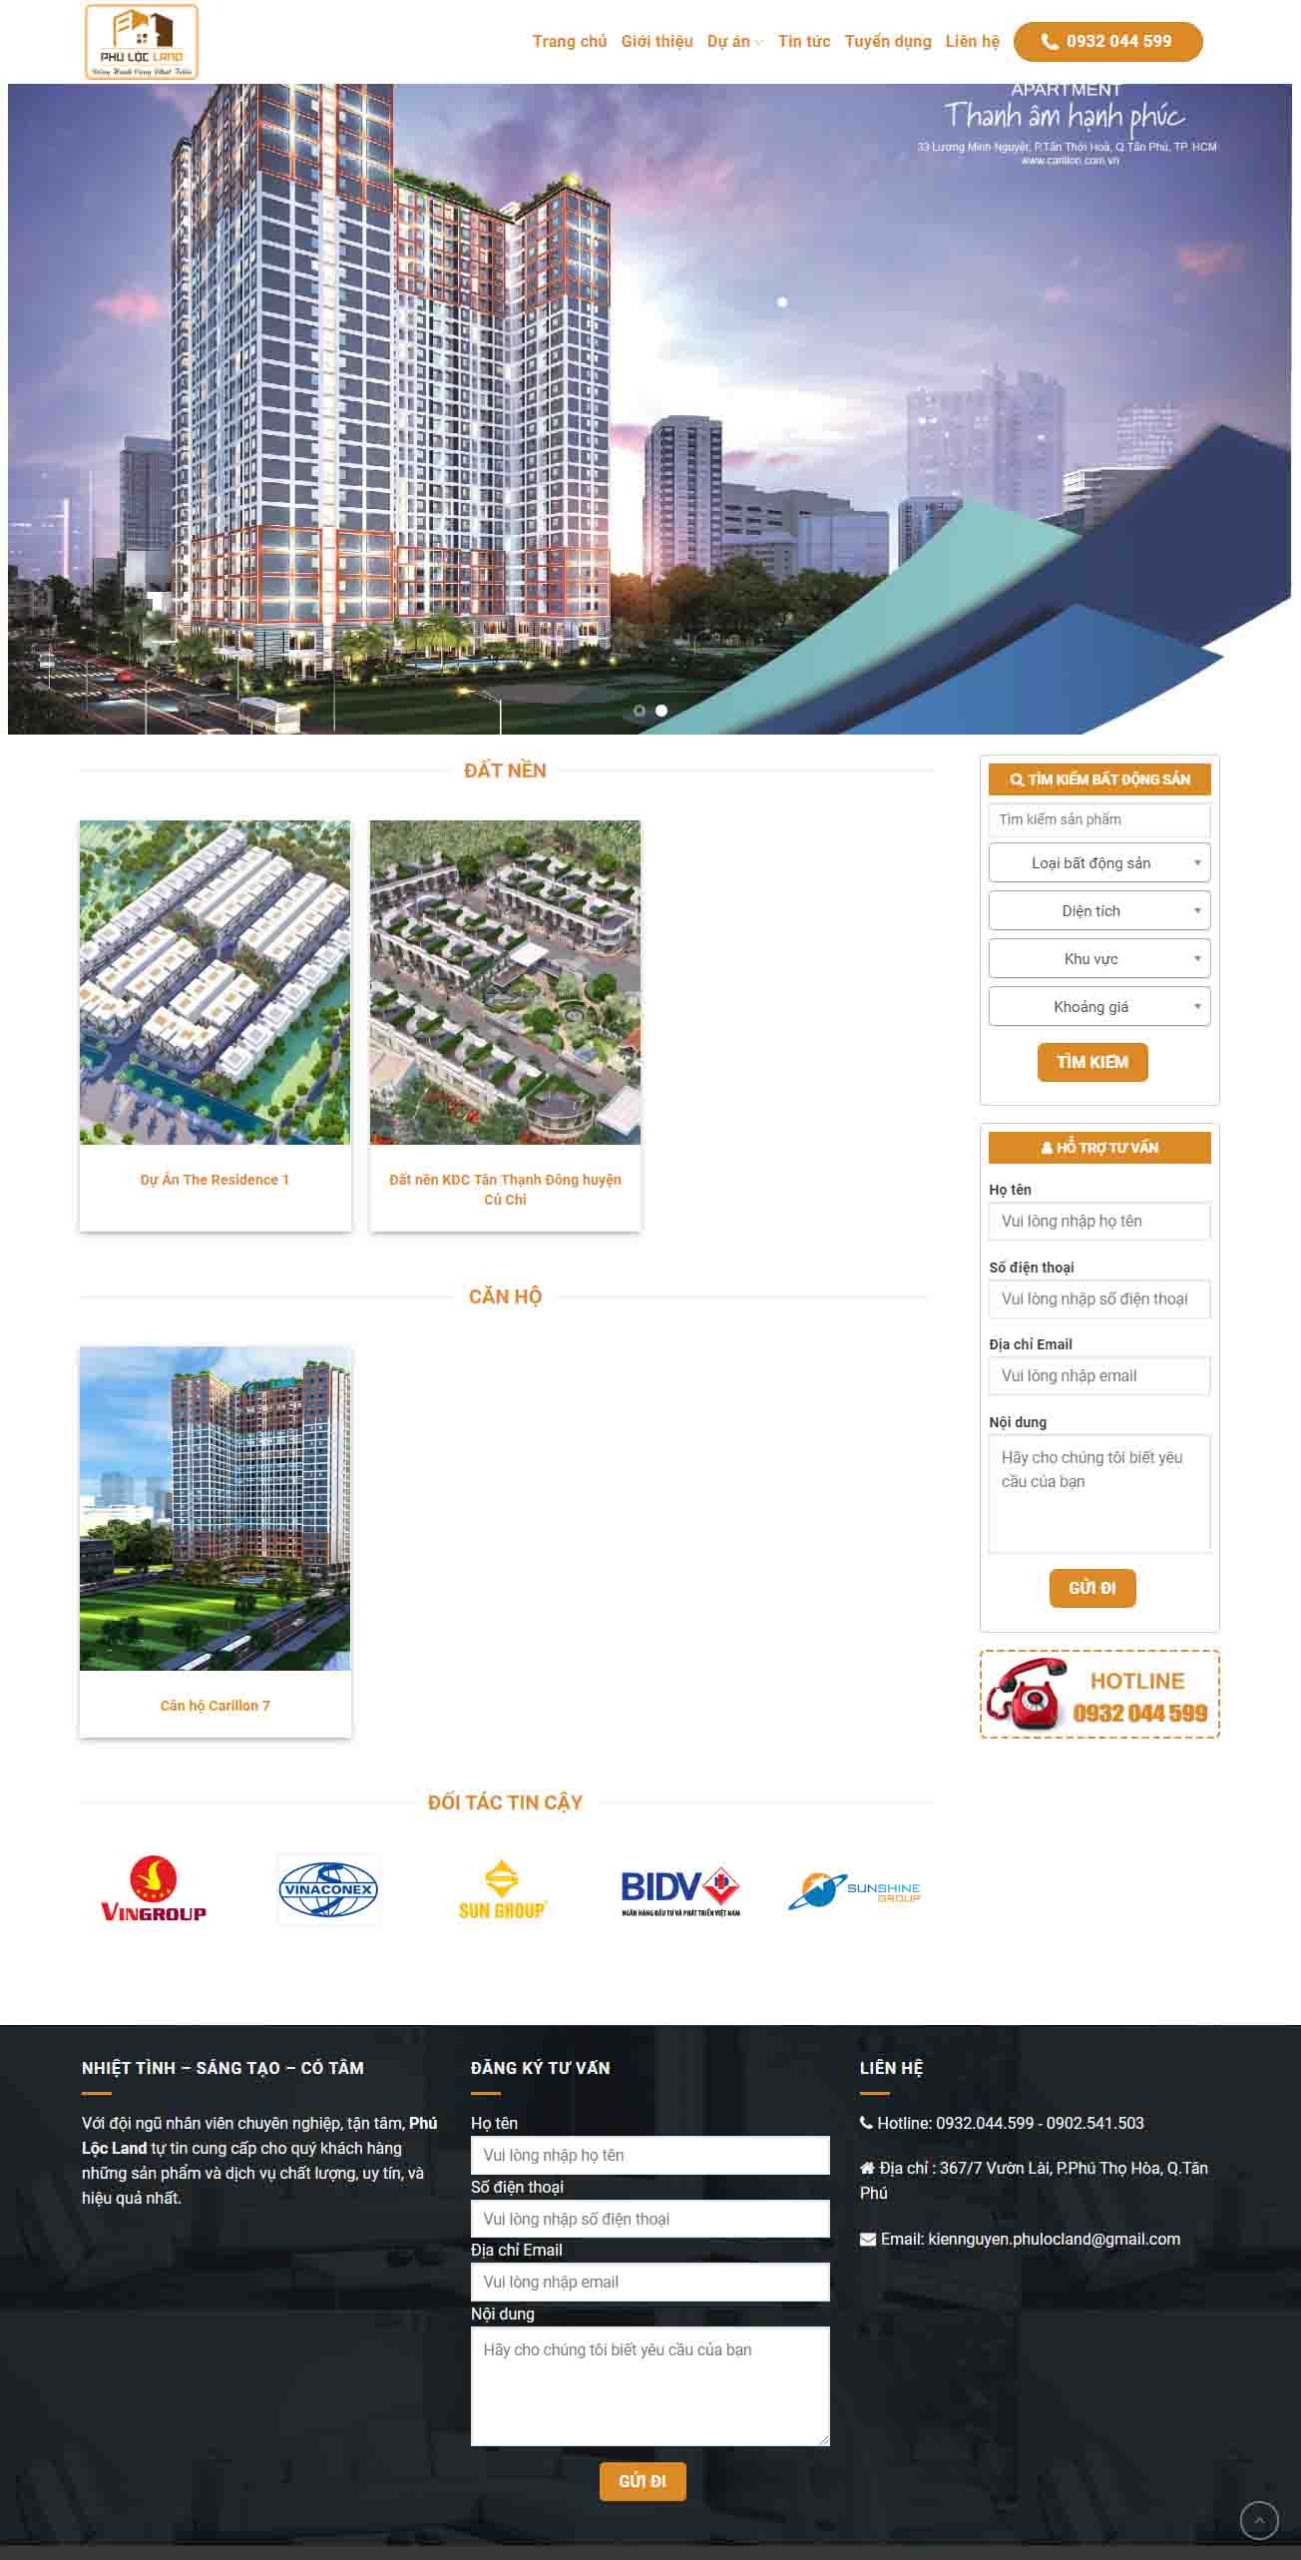 Mẫu giao diện thiết kế website bất động sản một sự án giá rẻ